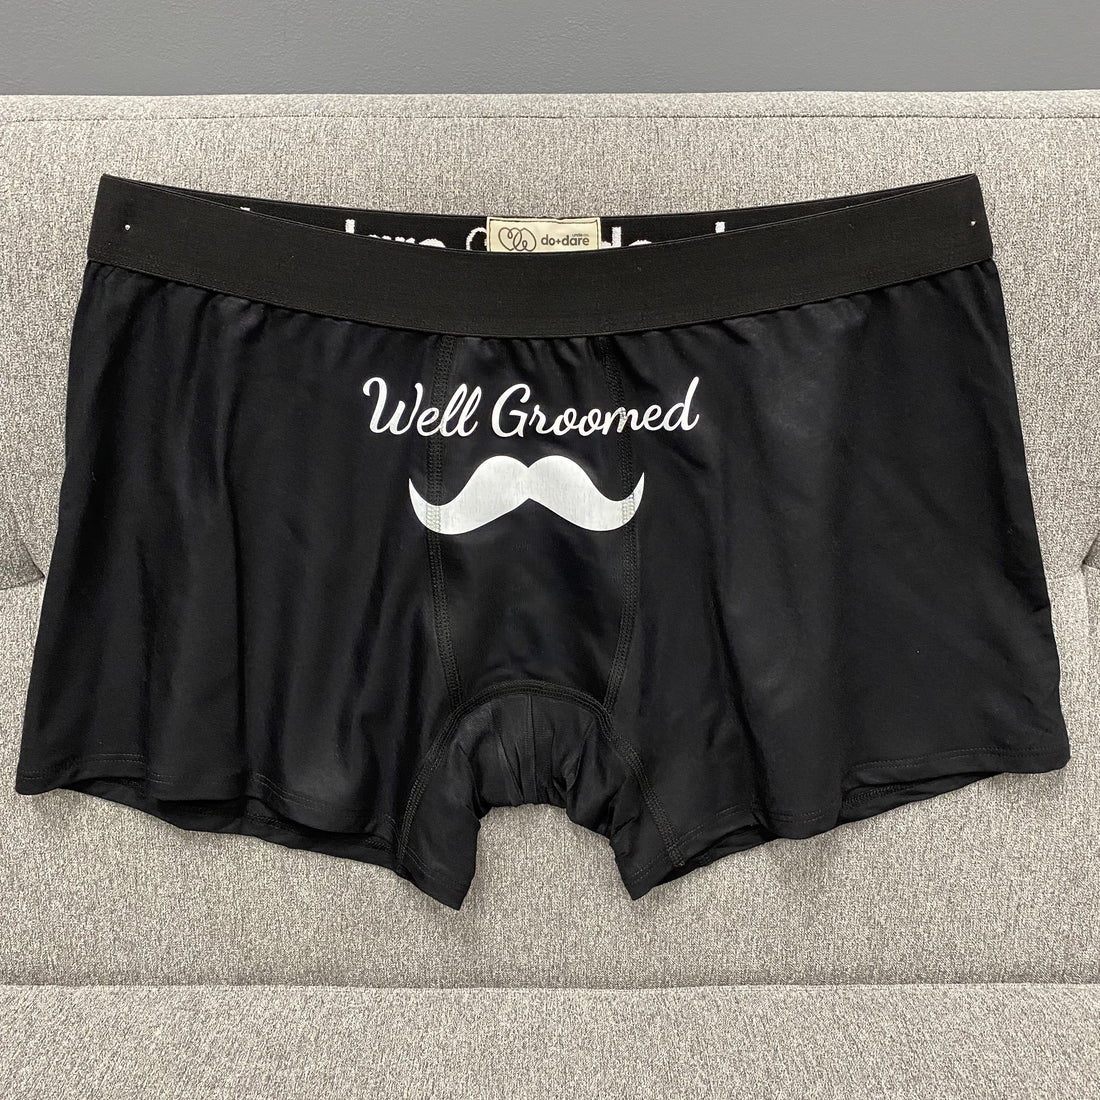 Well groomed | Boxer briefs underwear